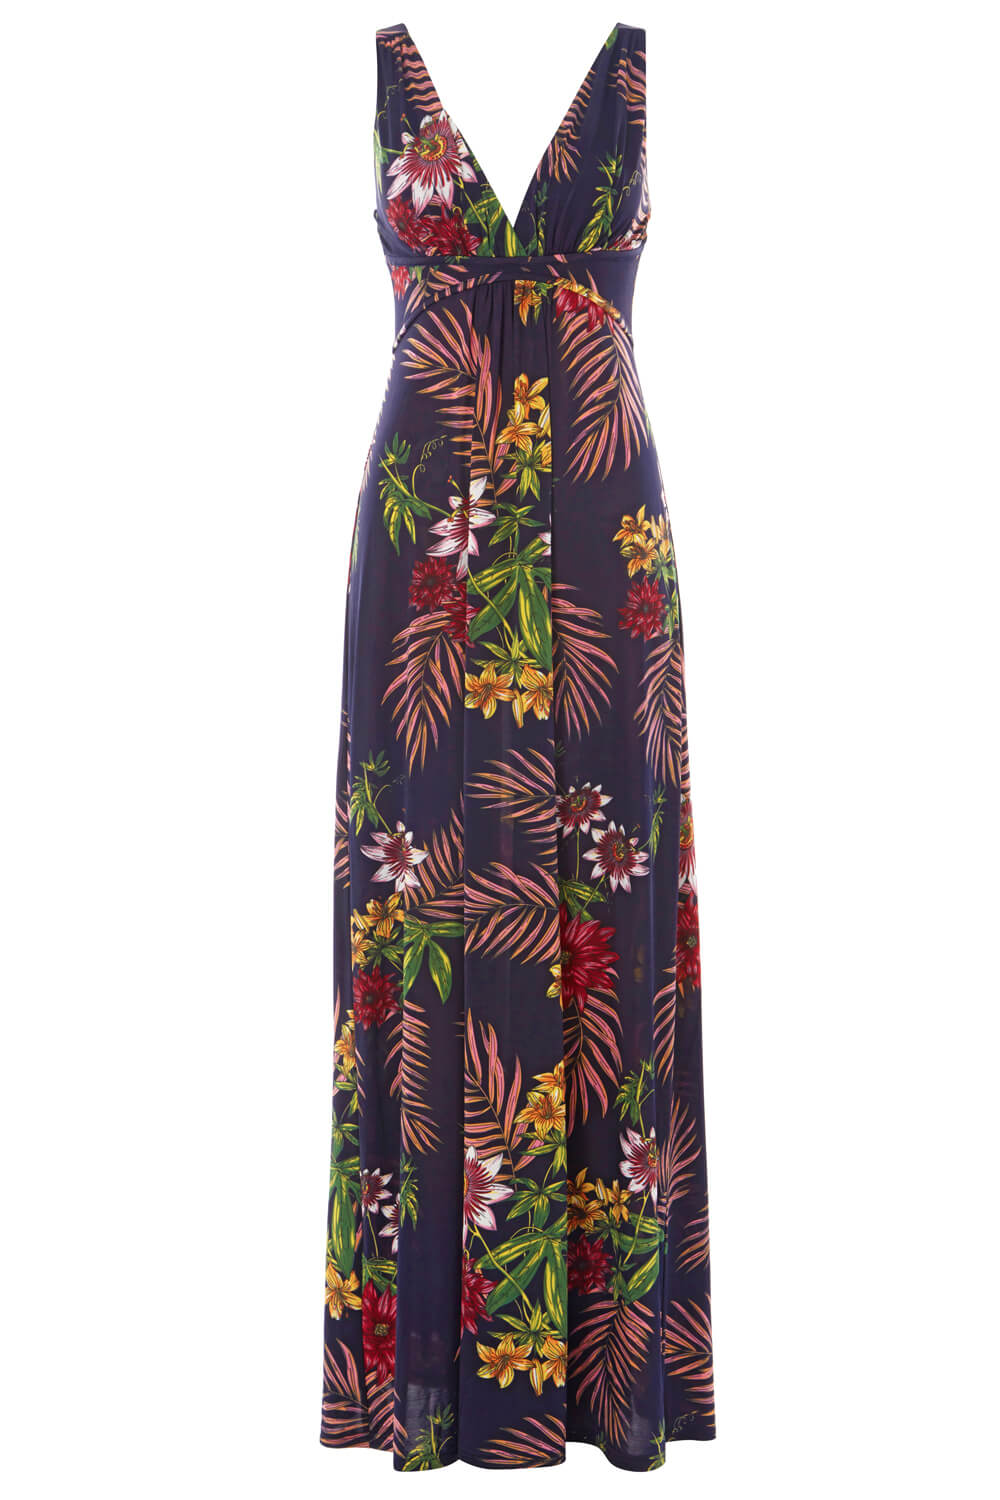 Tropical Print V Neck Maxi Dress in Navy - Roman Originals UK